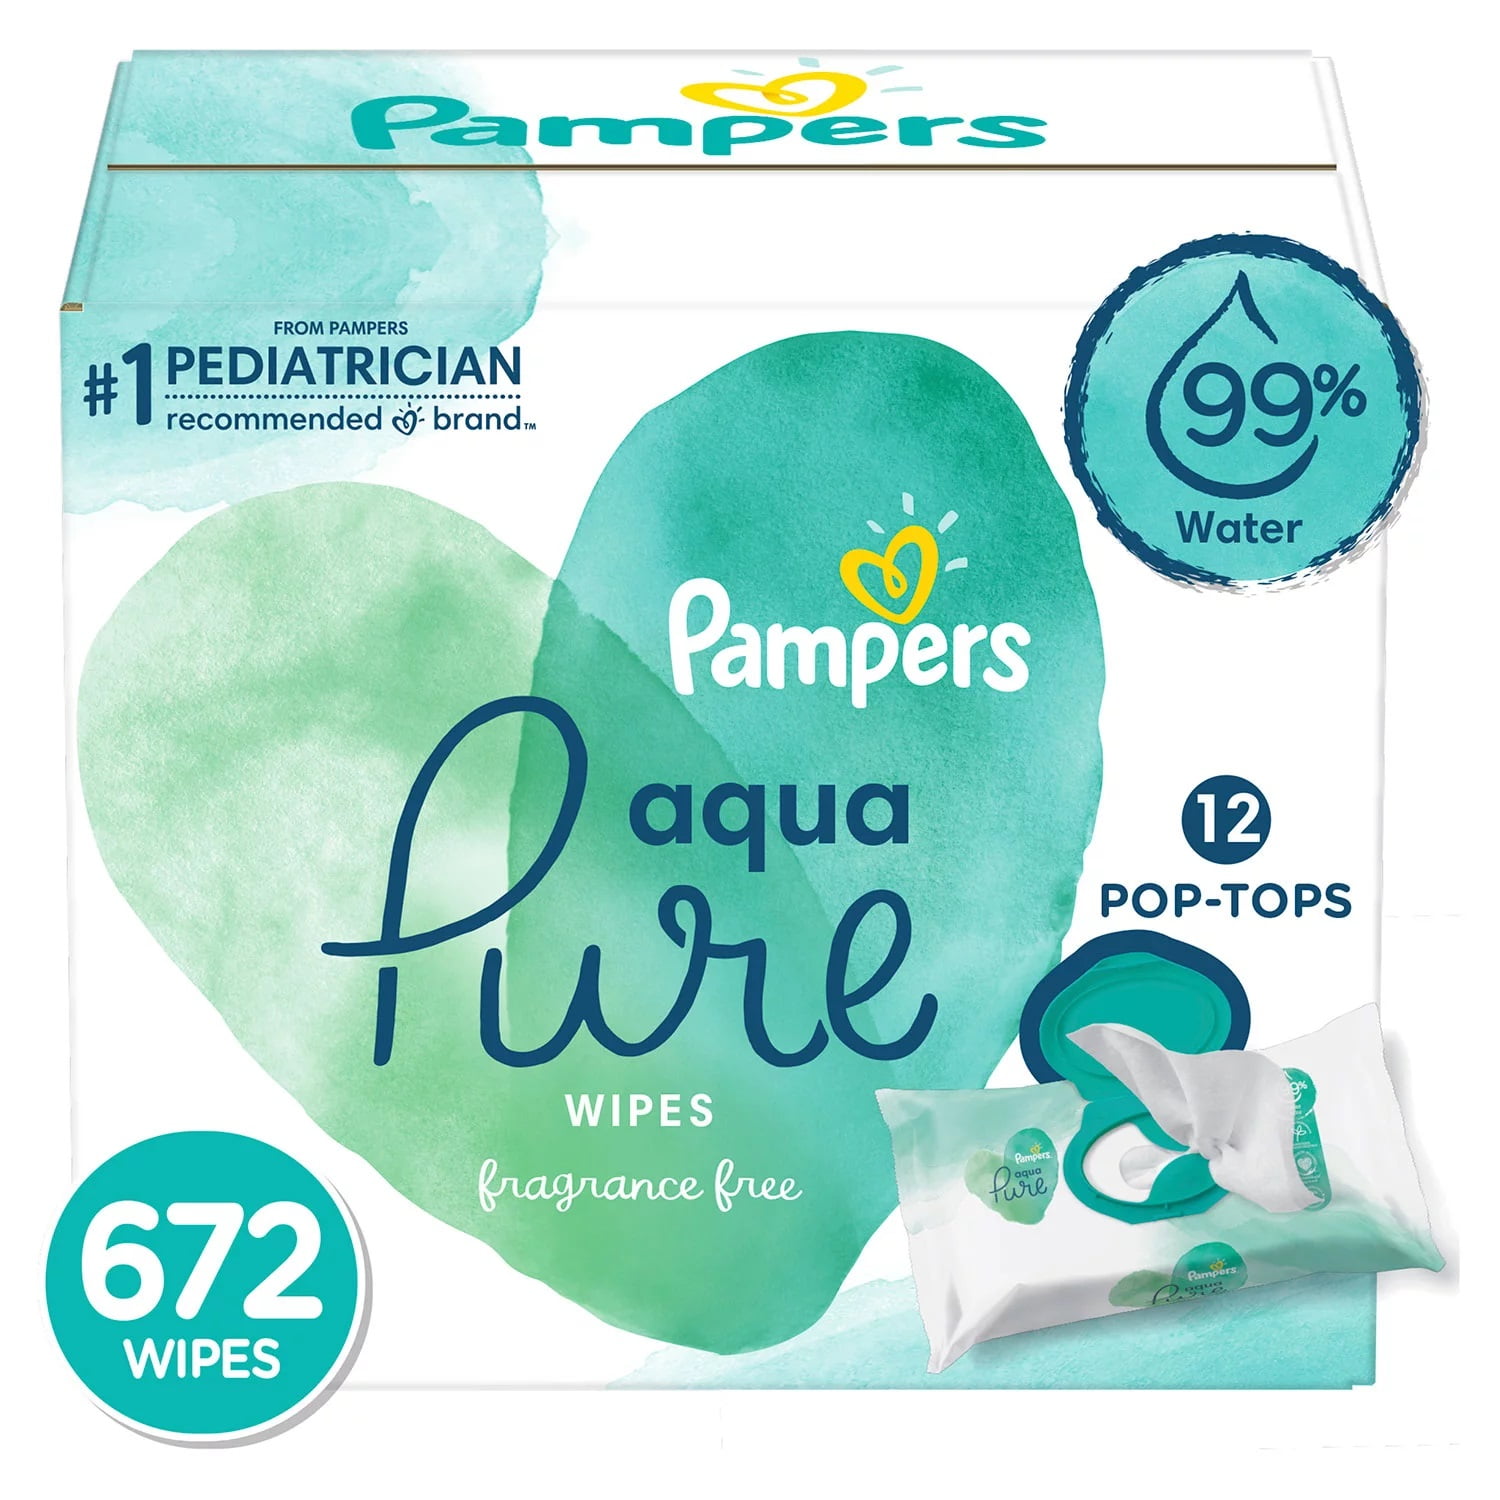 Pampers, Aqua Pure, Sensitive, Baby Wipes Box 12x Pop-Top 672 Count 